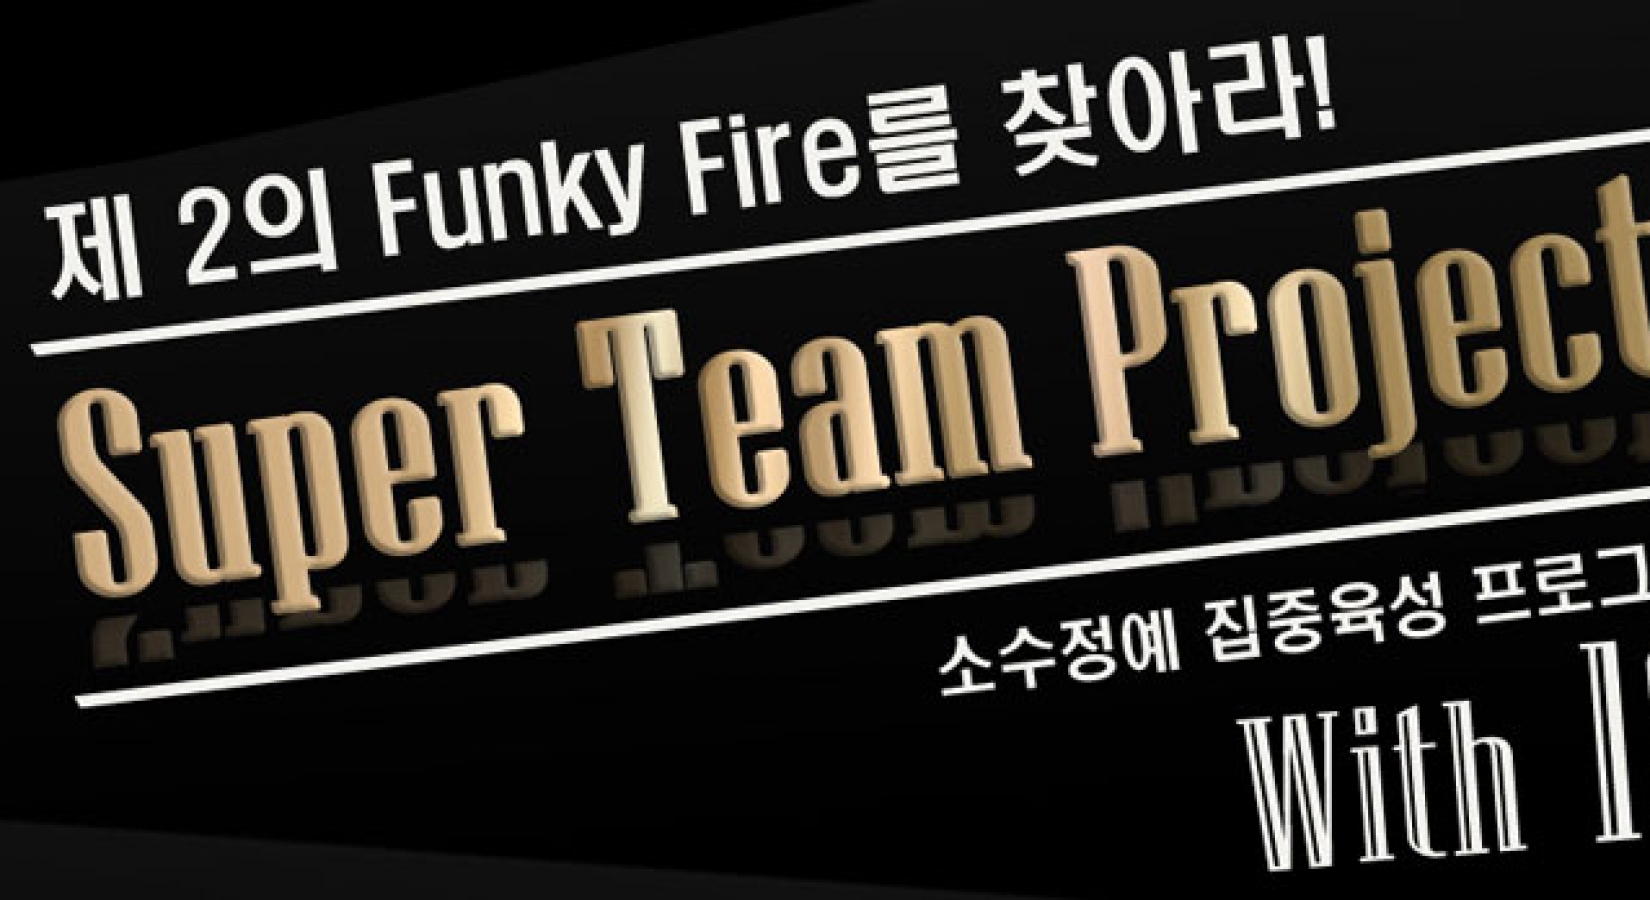 Super Team Project★제 2의 펑키파이어를 찾아라!